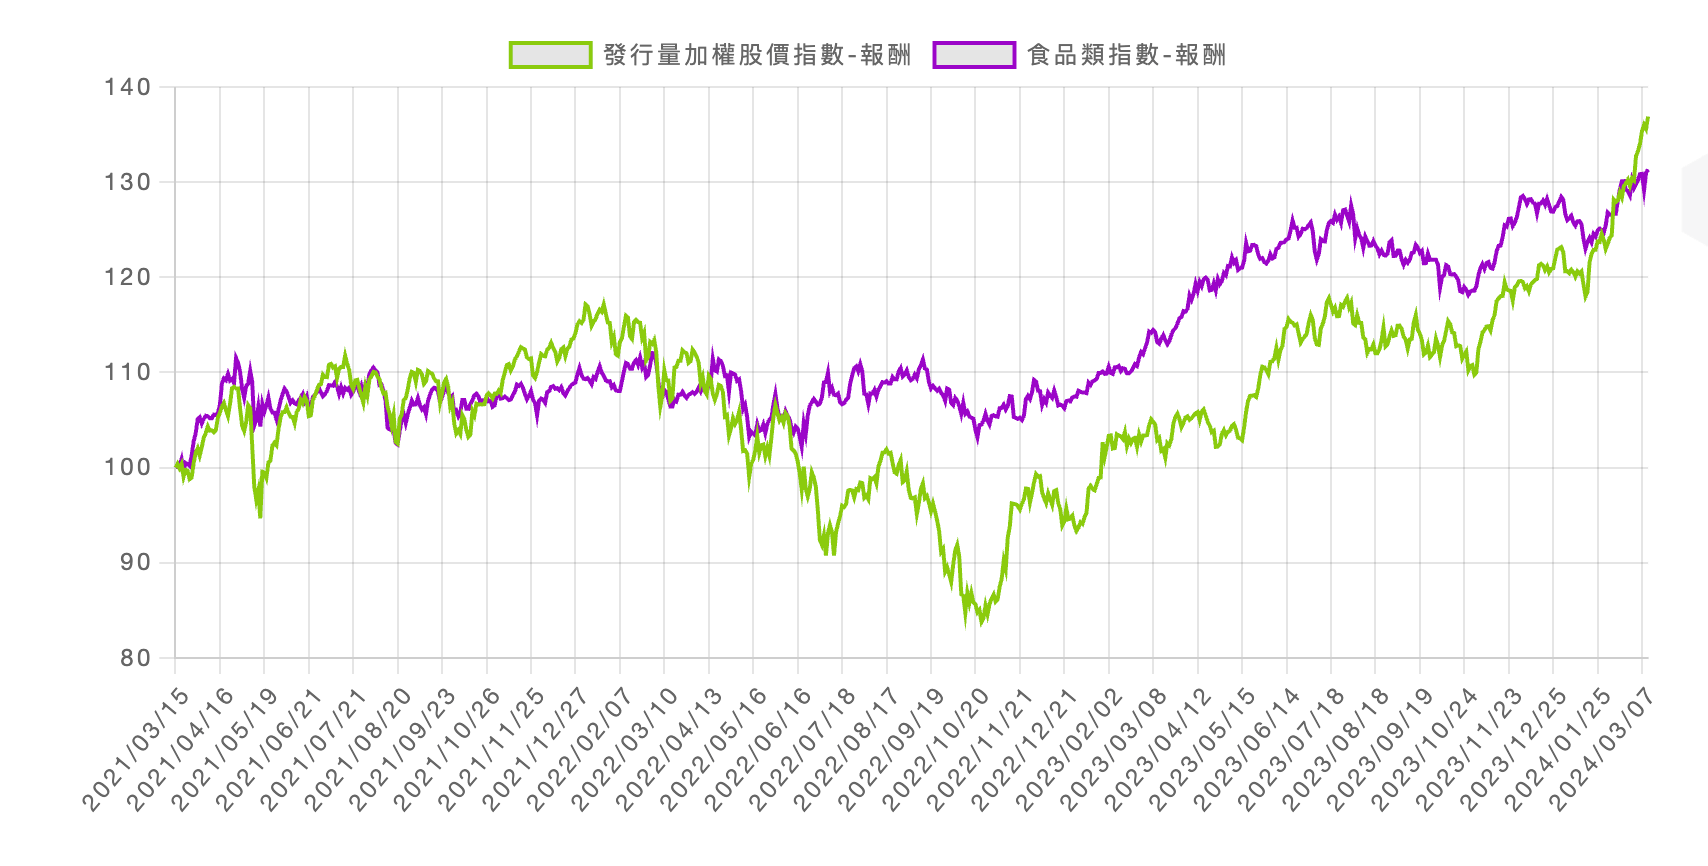 台灣發行量加權股價指數與食品類指數報酬趨勢對比圖